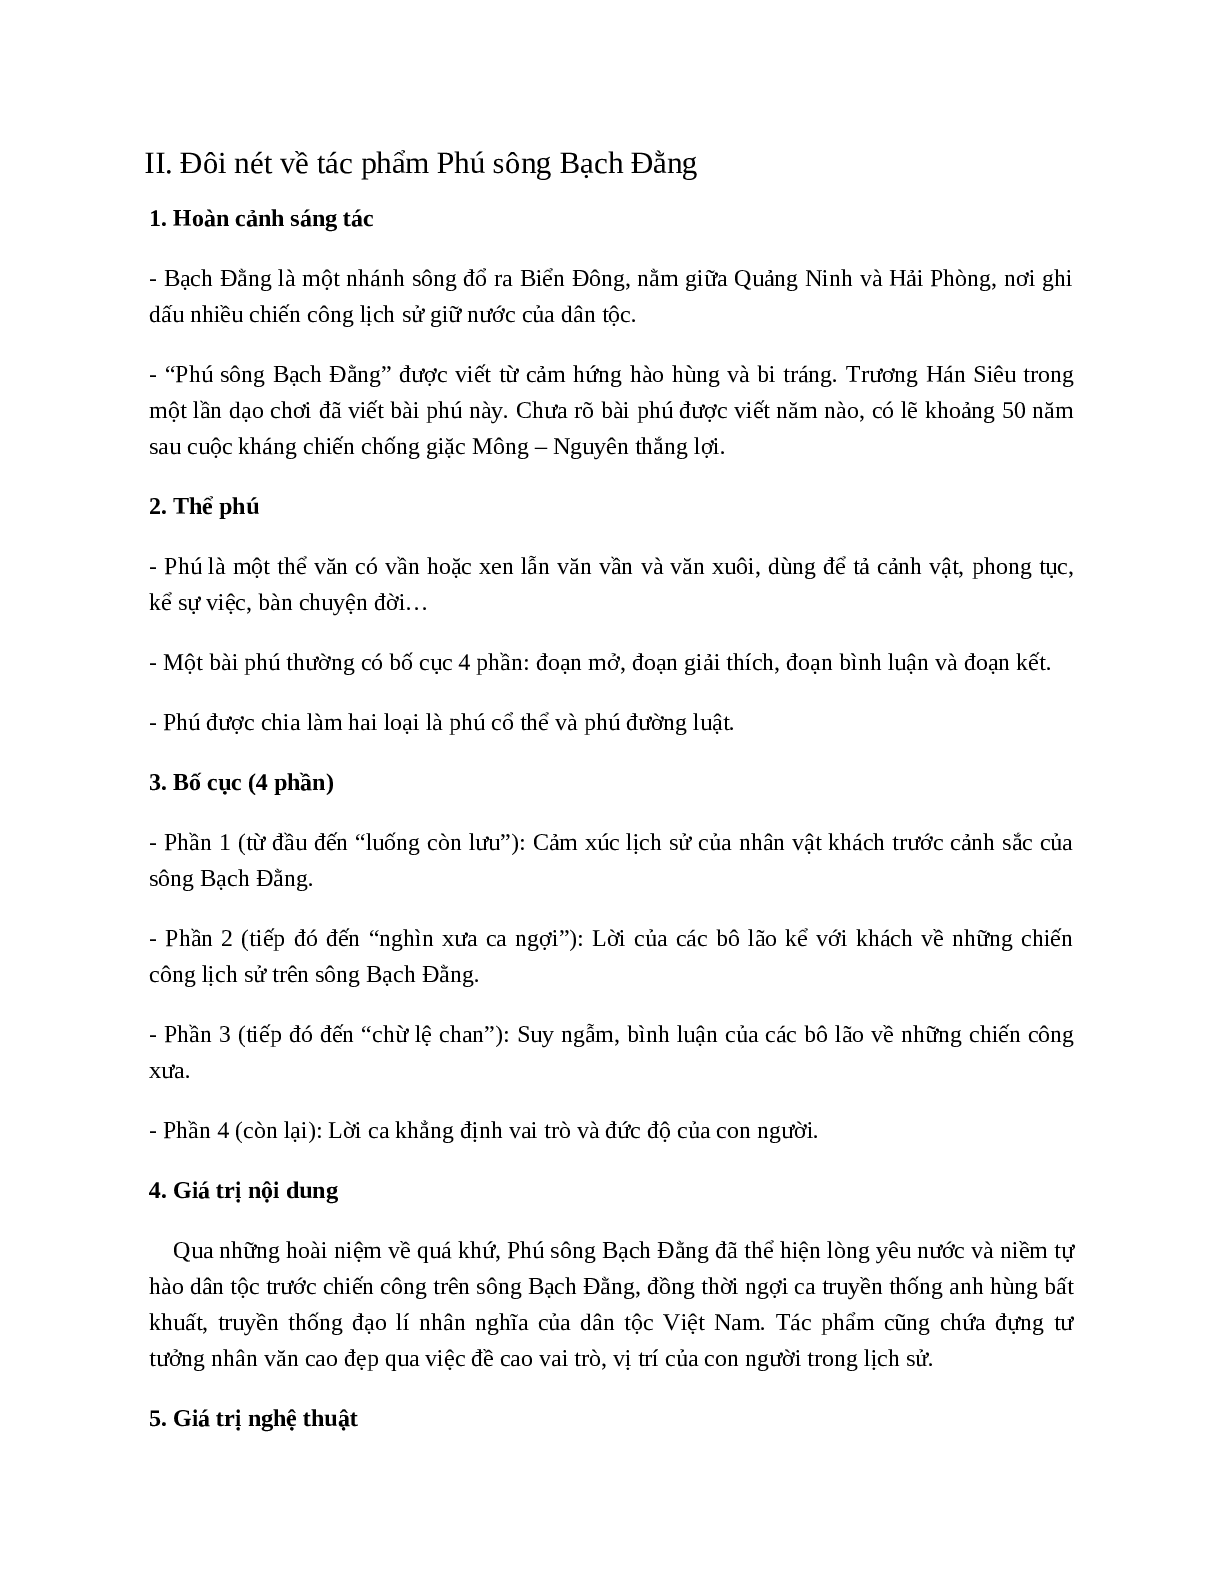 Phú sông Bạch Đằng (Trương Hán Siêu) - nội dung, dàn ý phân tích, bố cục, tóm tắt (trang 7)